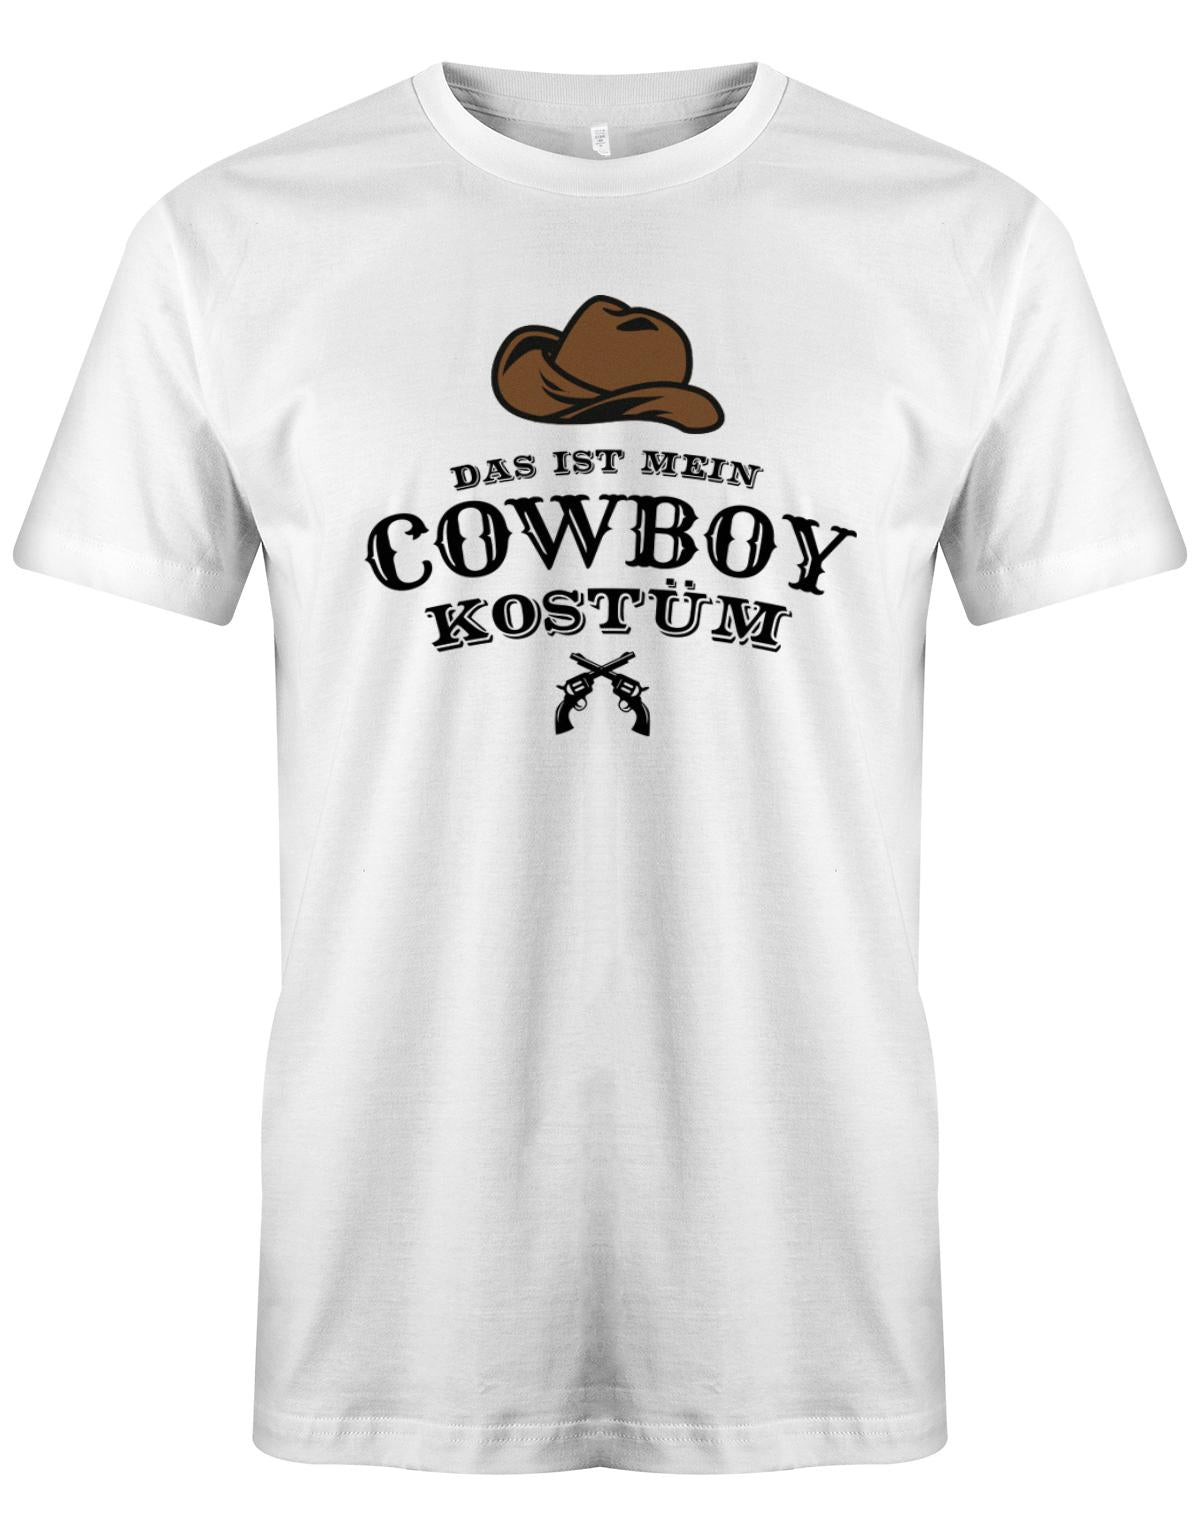 Das-ist-mein-Cowboy-Kost-m-revolver-Hut-Fasching-Karneval-Verkleidung-Shirt-Weiss